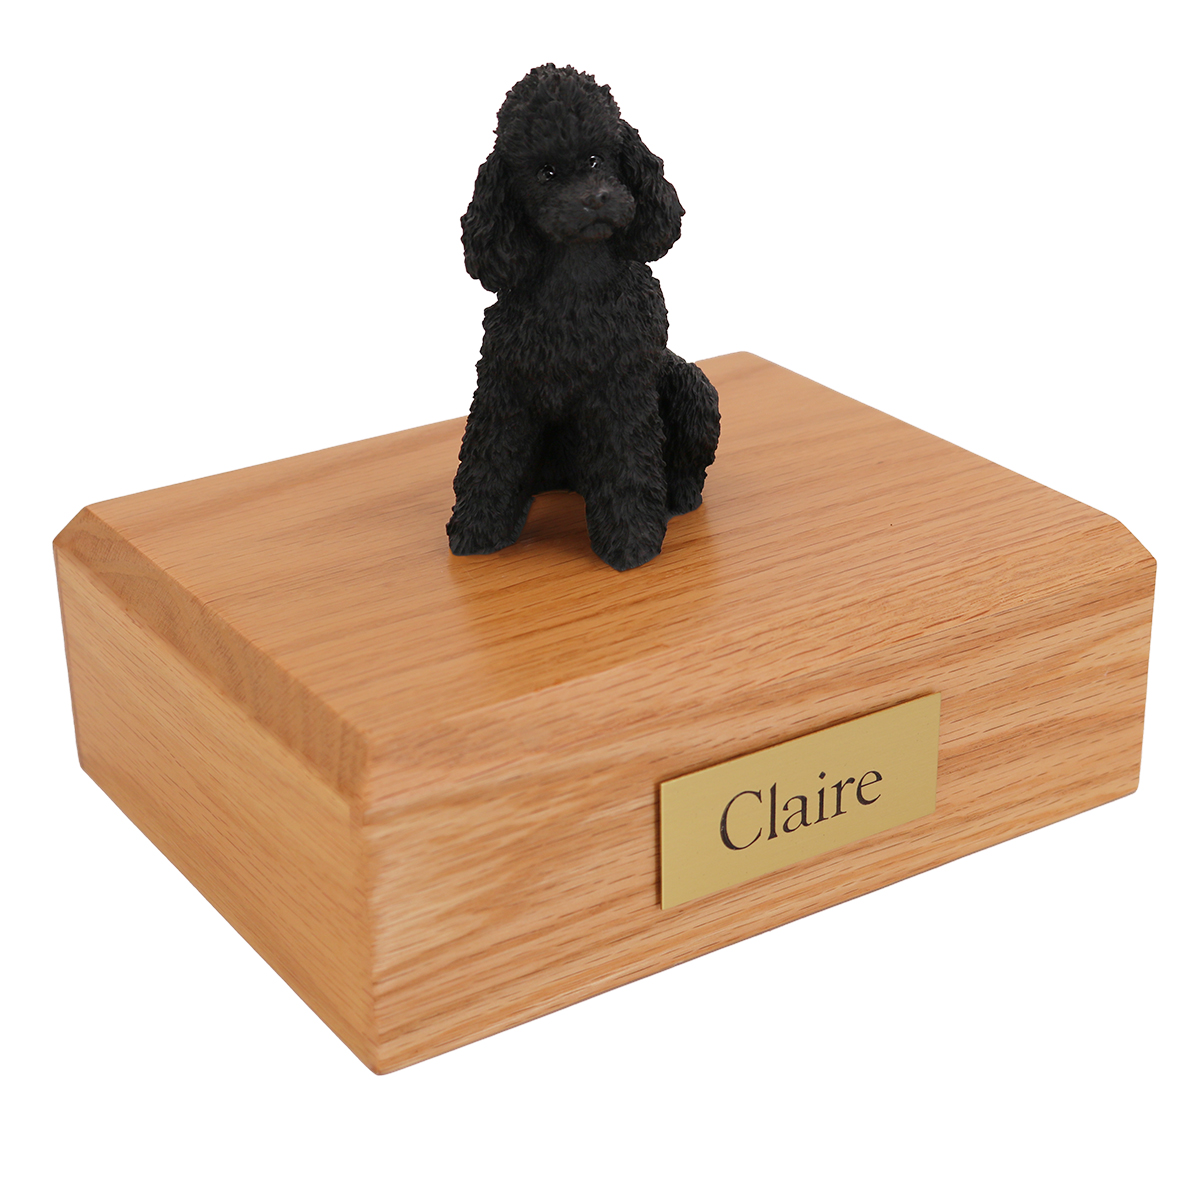 Dog, Poodle, Black - sport cut - Figurine Urn